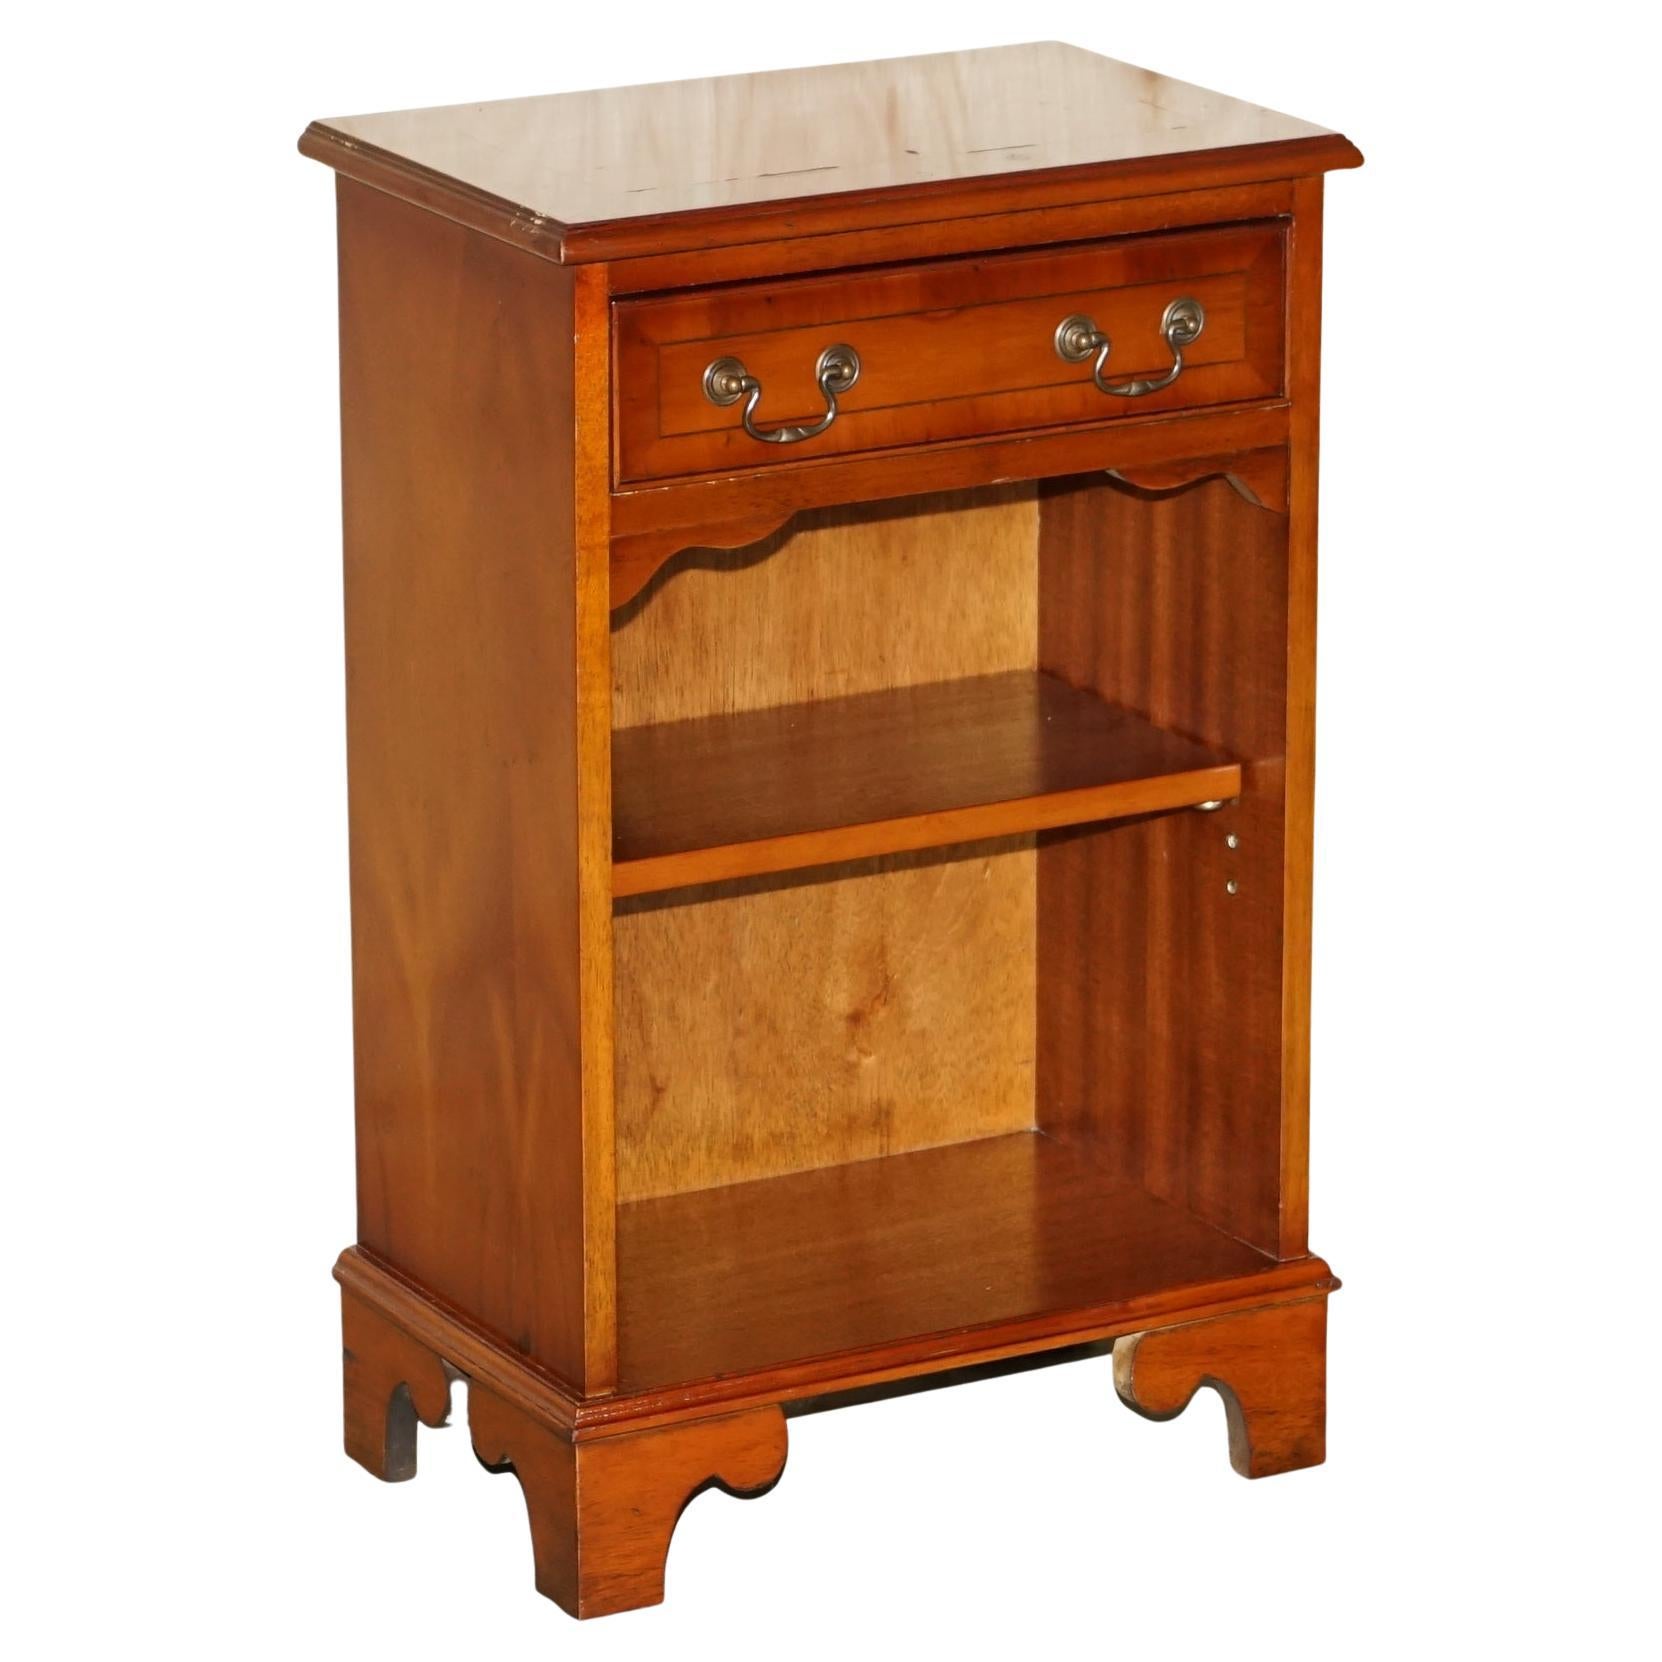 Table de bibliothèque vintage en bois d'if surdimensionnée avec un seul tiroir et des étagères